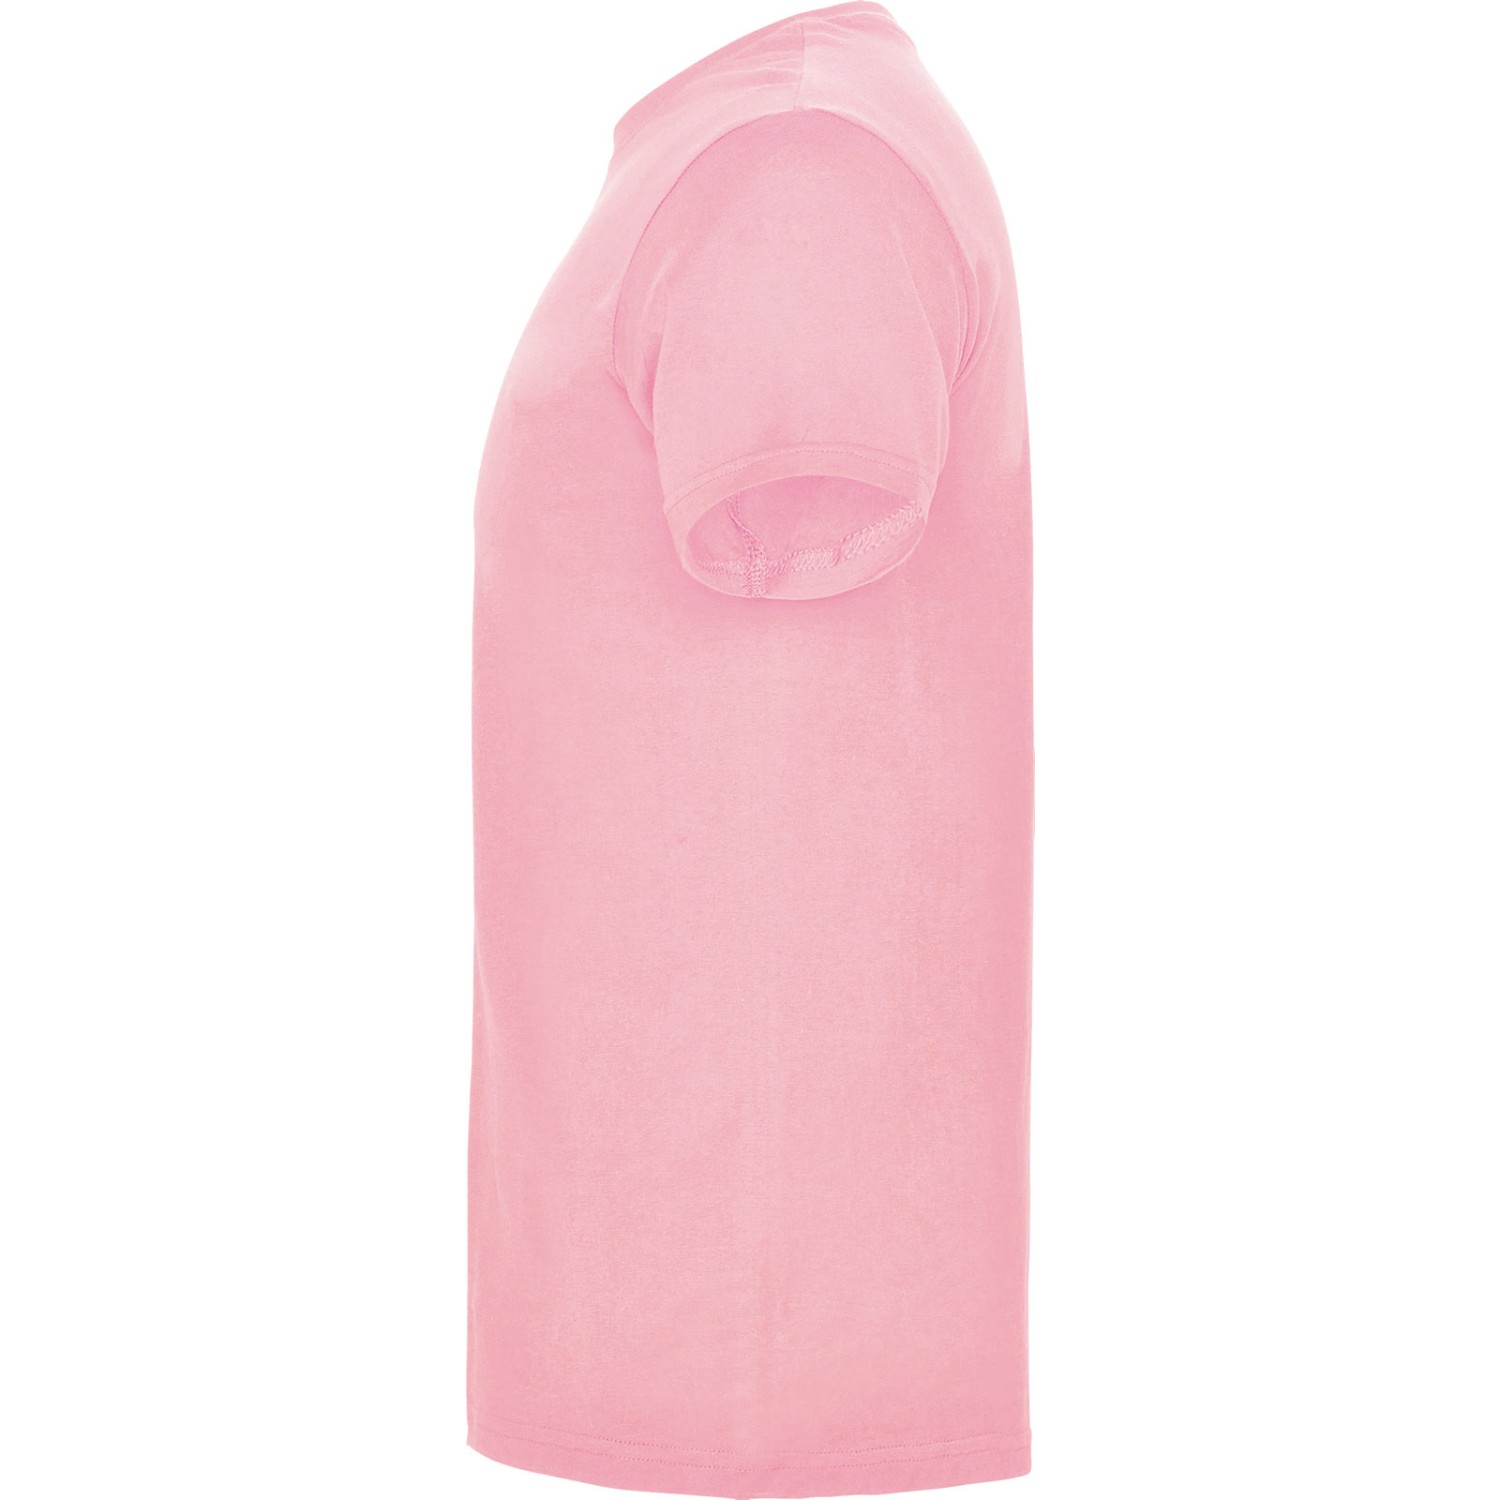 3. Foto T-Shirt BEAGLE Kurzarm Rundhals mit Druck (Farbe: light pink Größe: L)